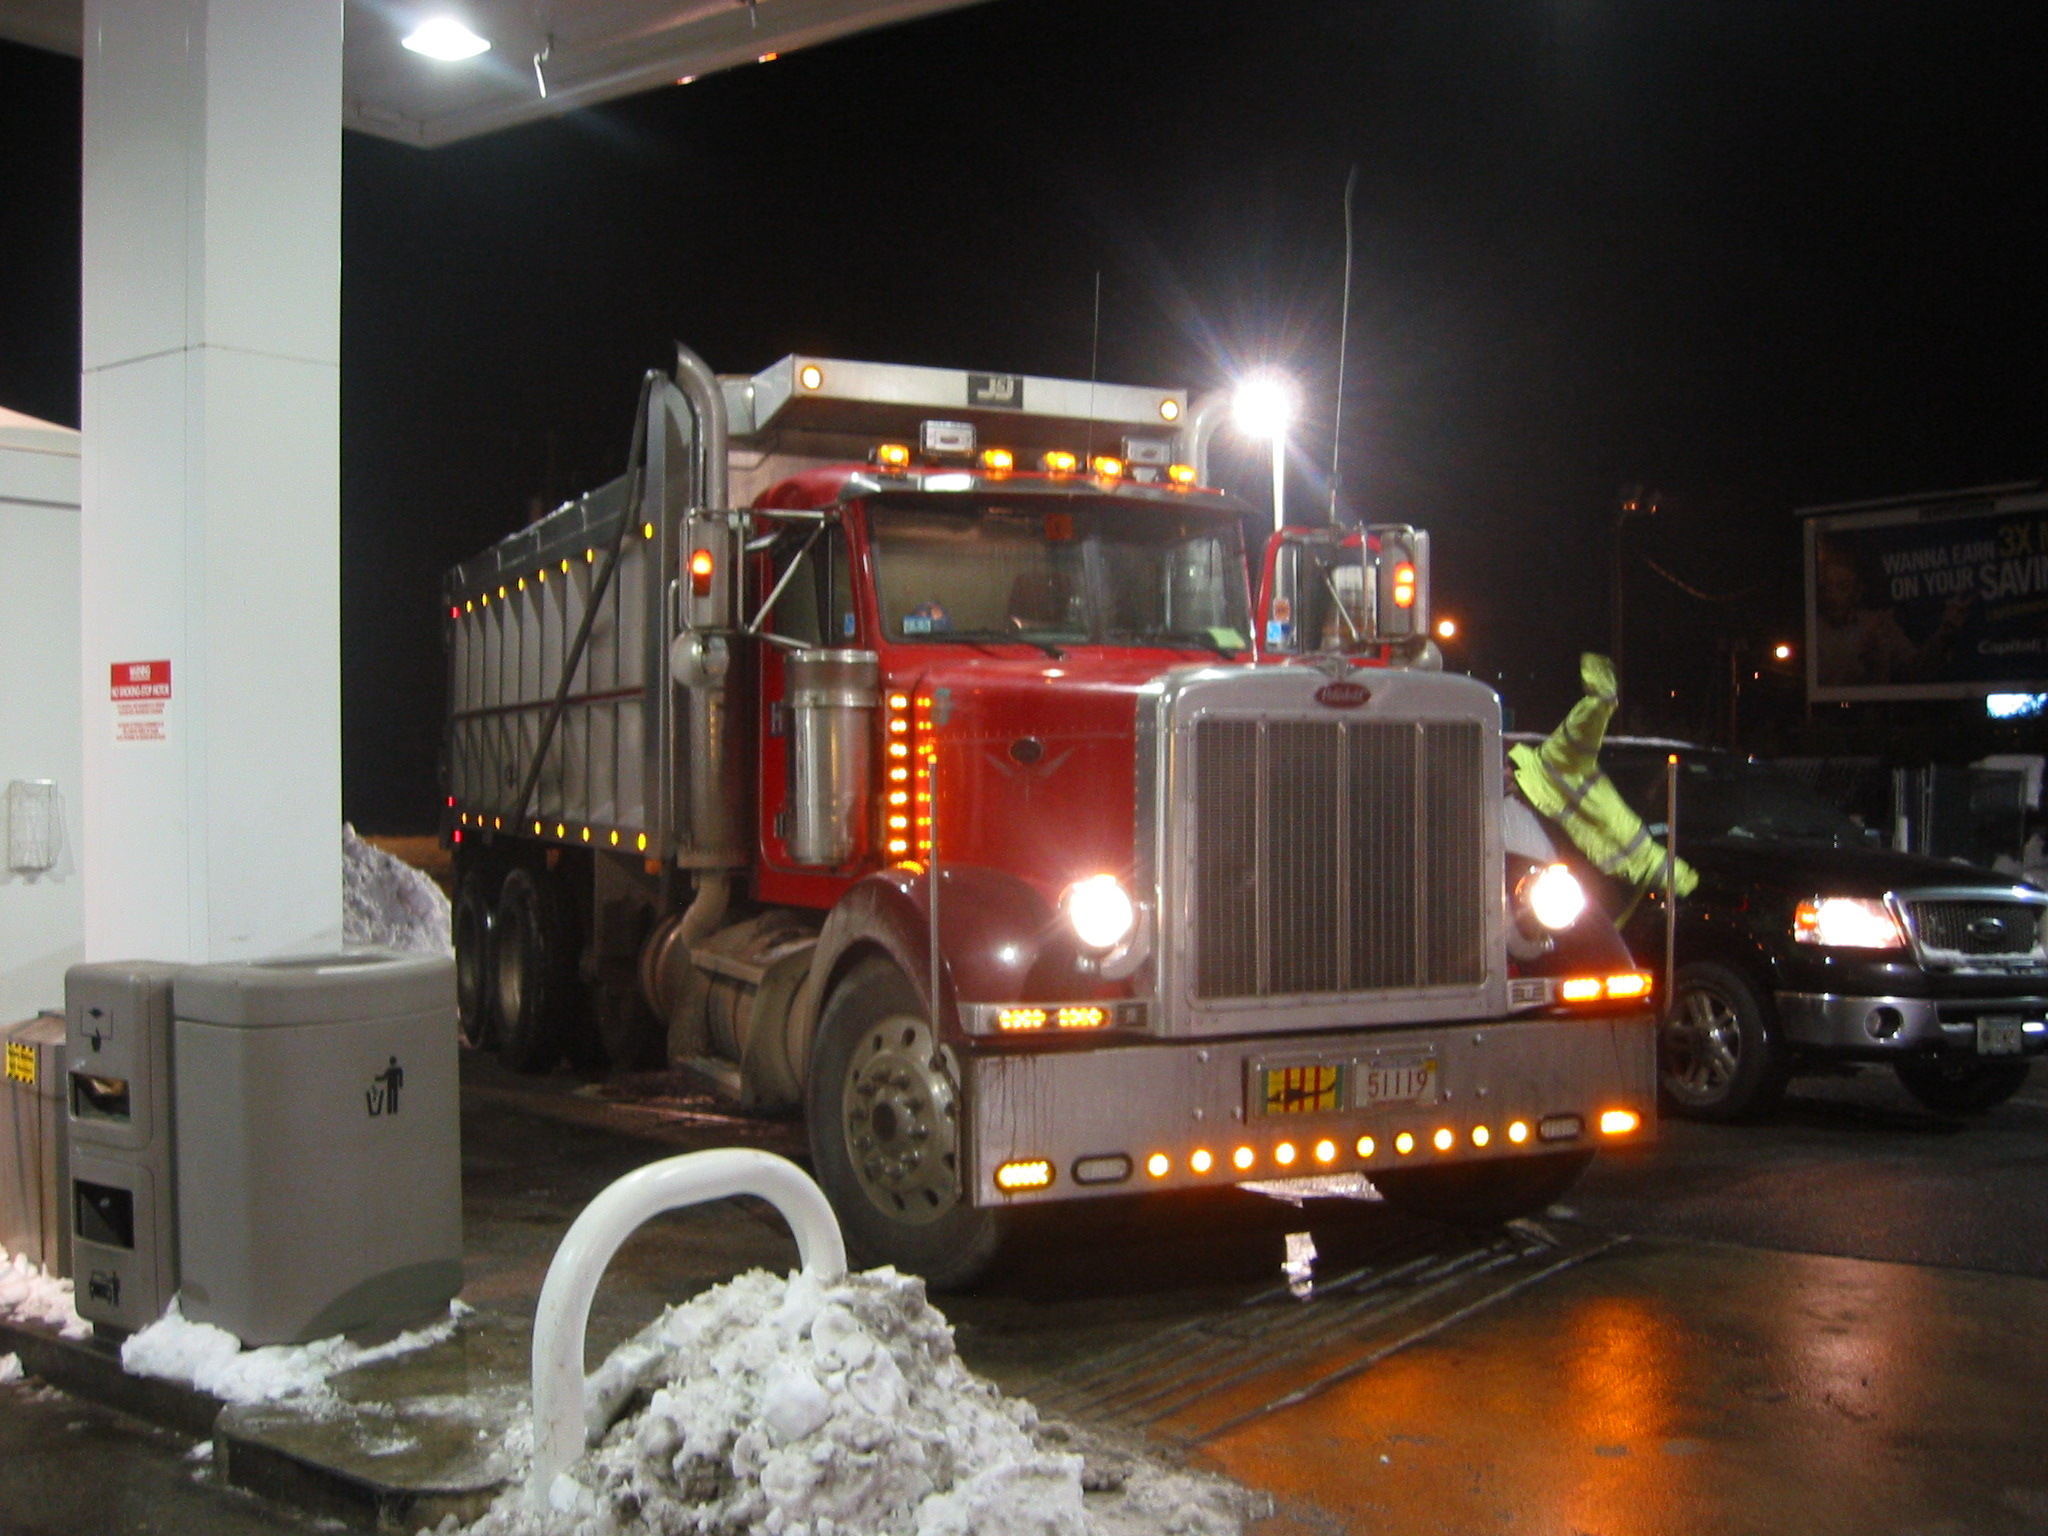 Peterbilt 379 Dump Truck - Red & Maroon | Flickr - Photo Sharing!